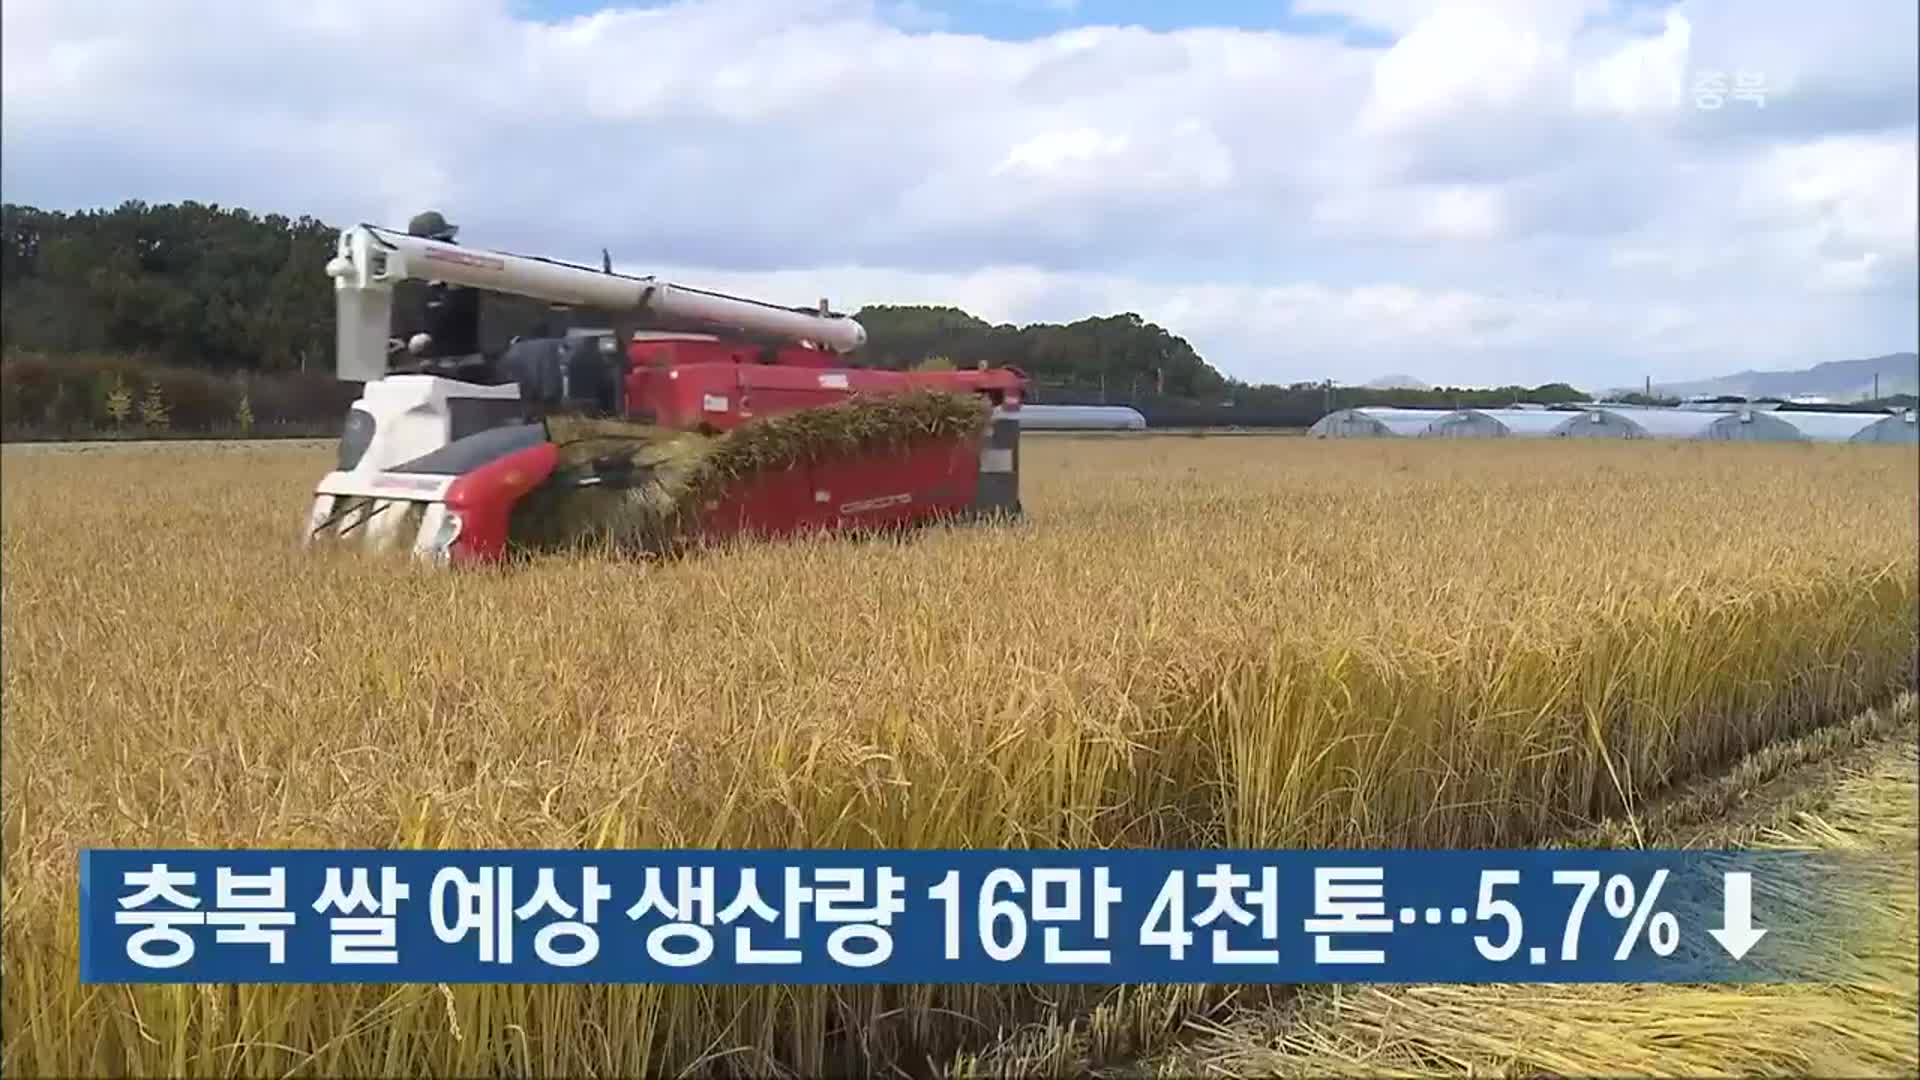 충북 쌀 예상 생산량 16만 4천 톤…5.7% ↓